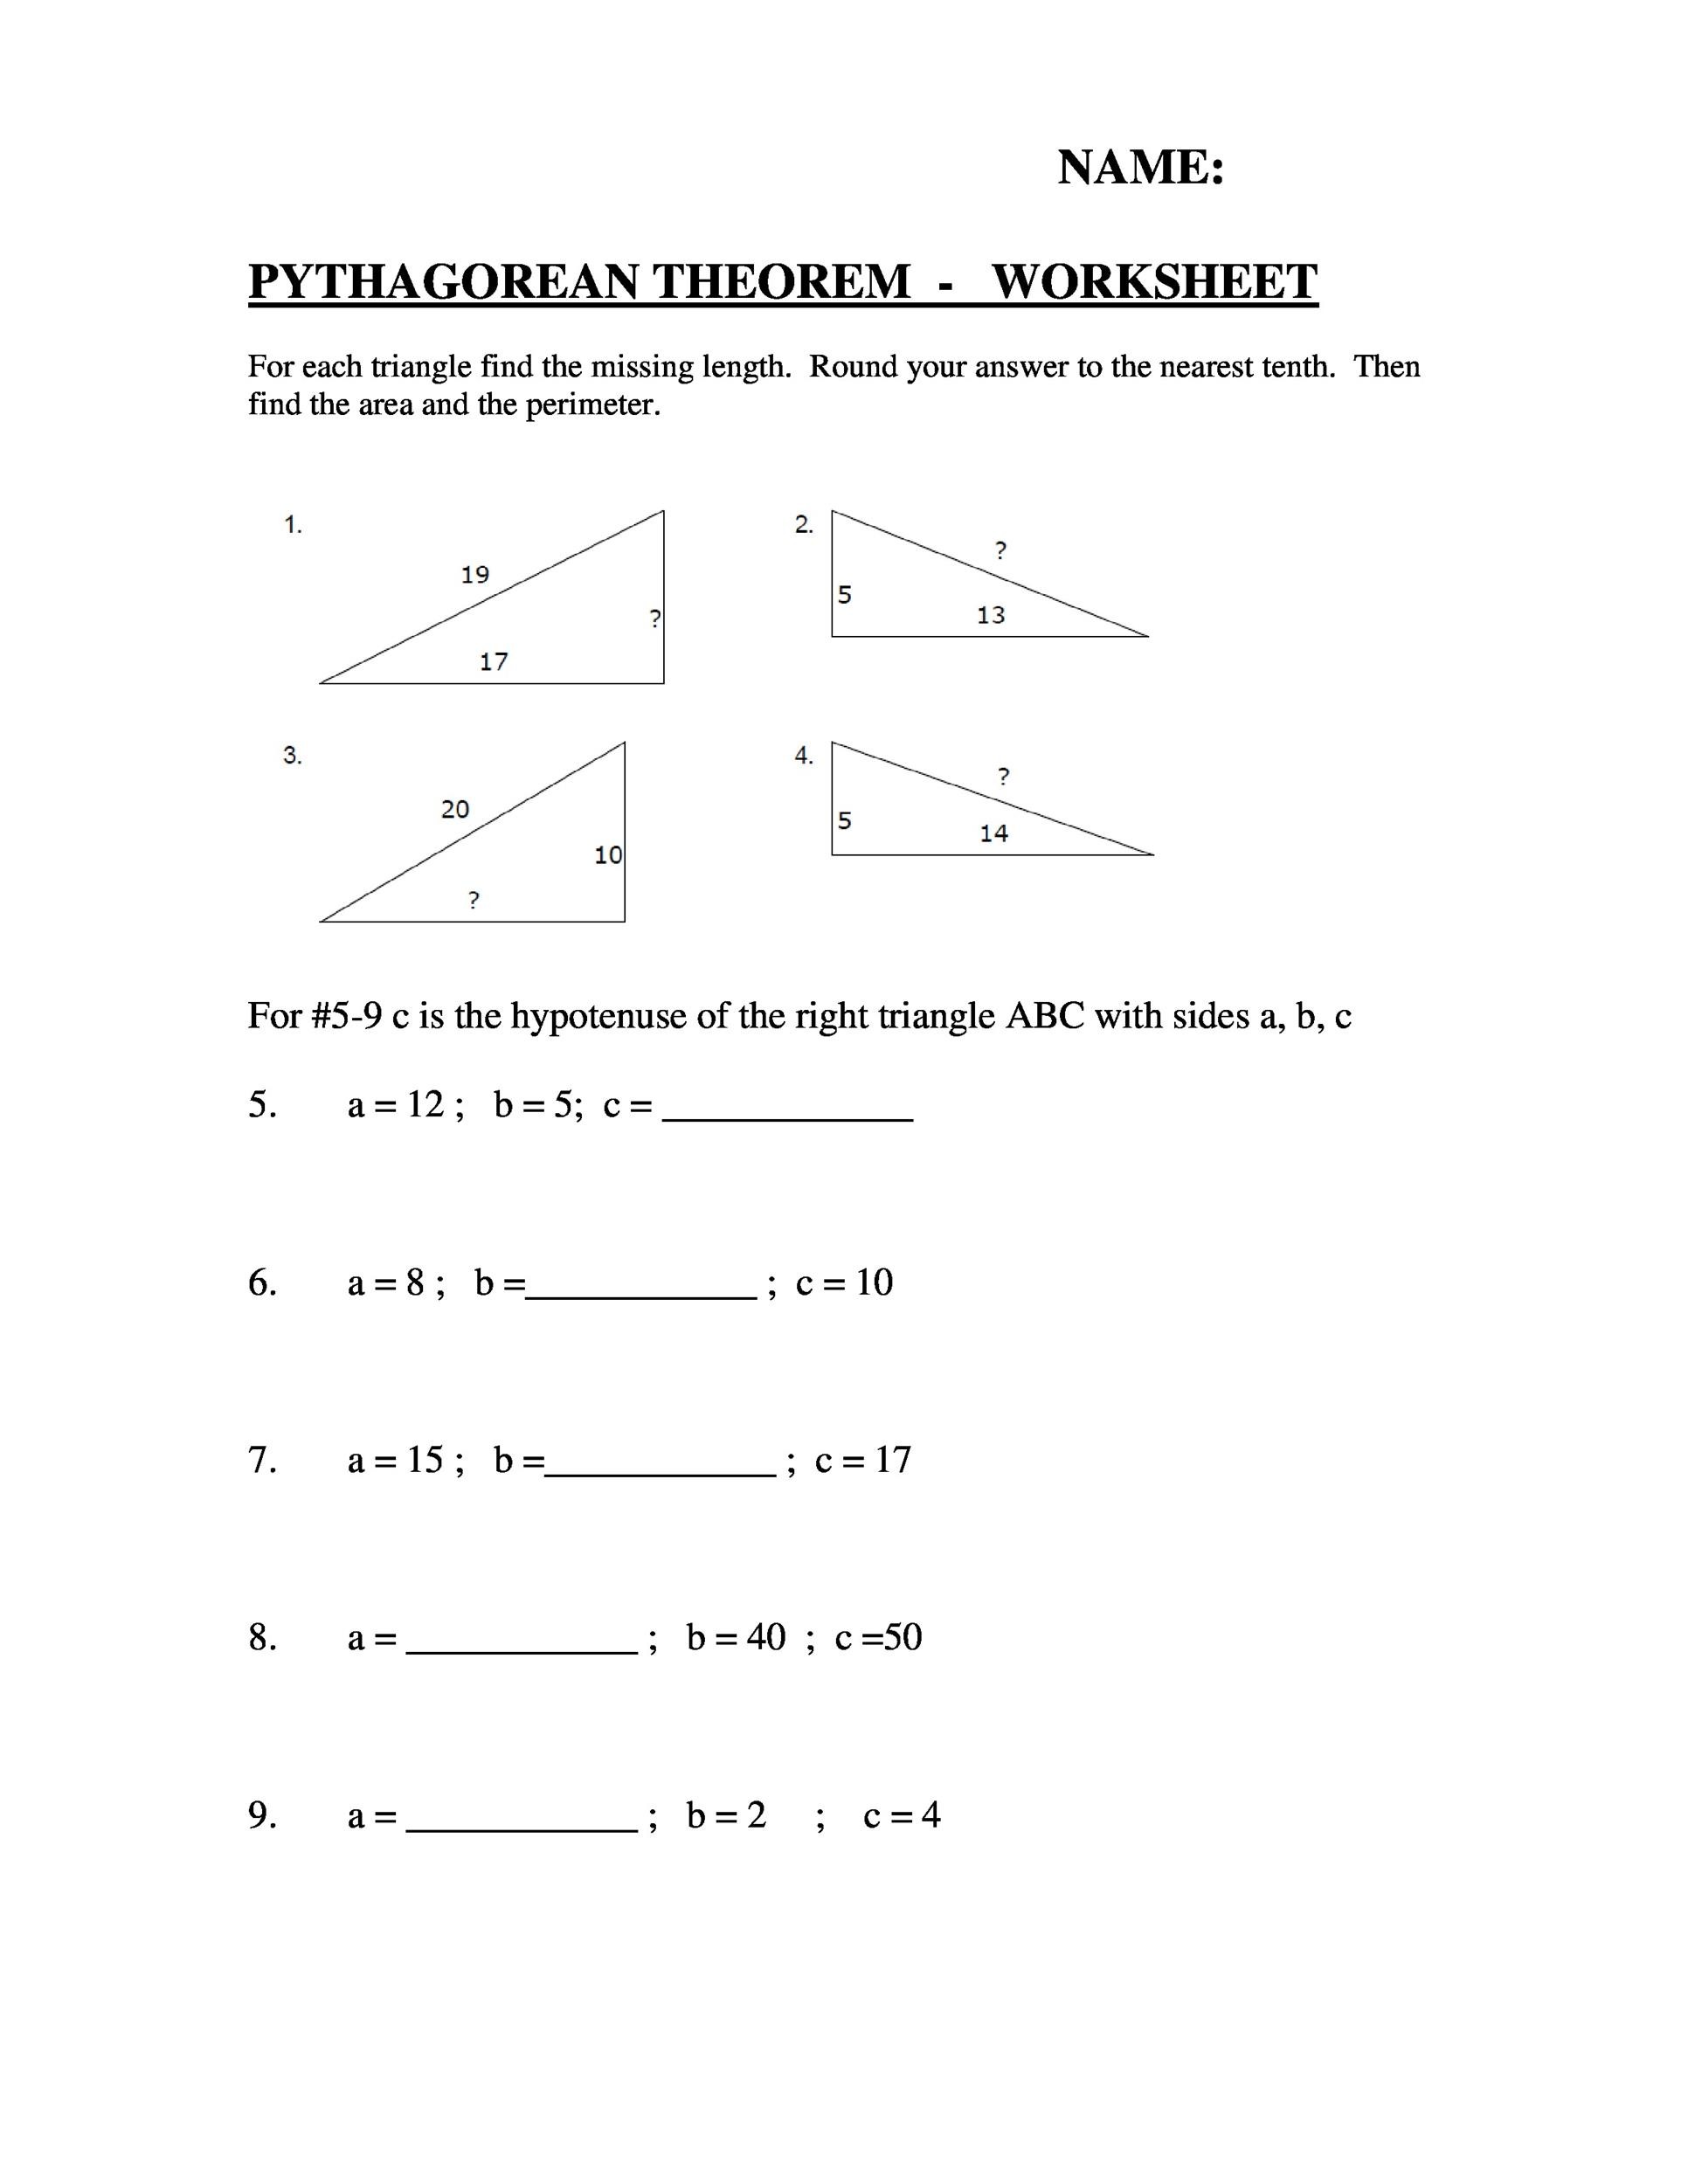 Pythagorean Theorem Worksheet Answer